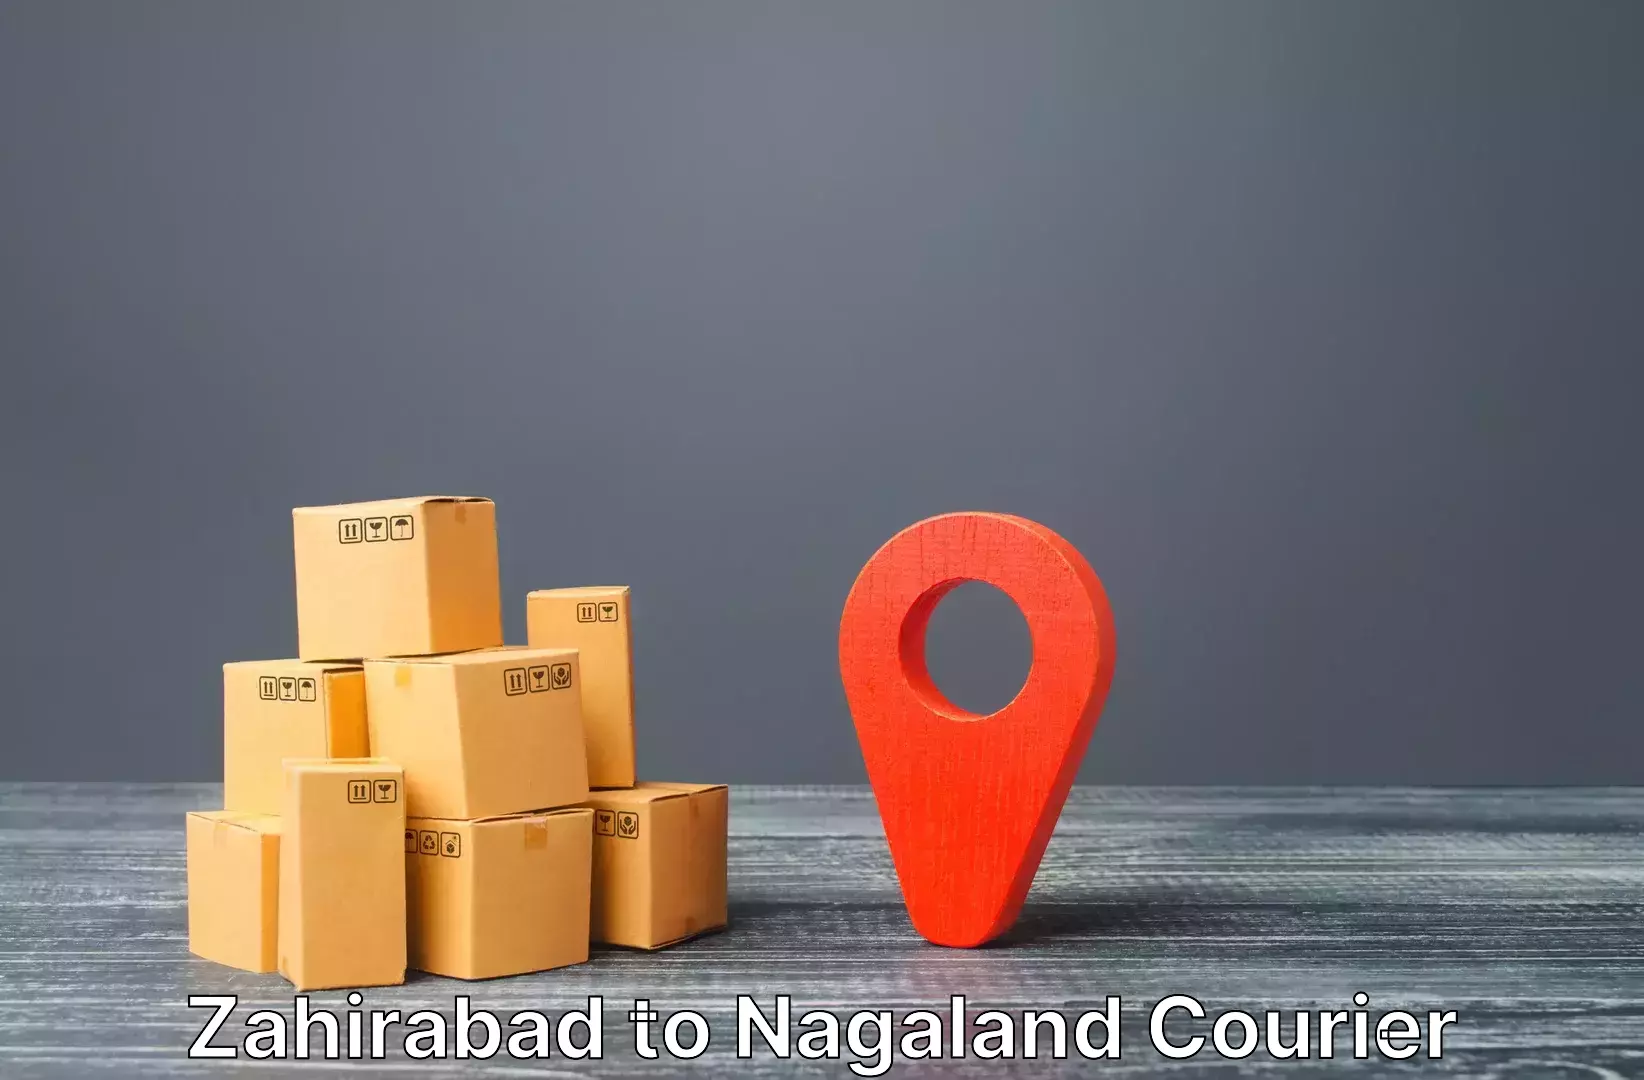 Emergency baggage service Zahirabad to Nagaland